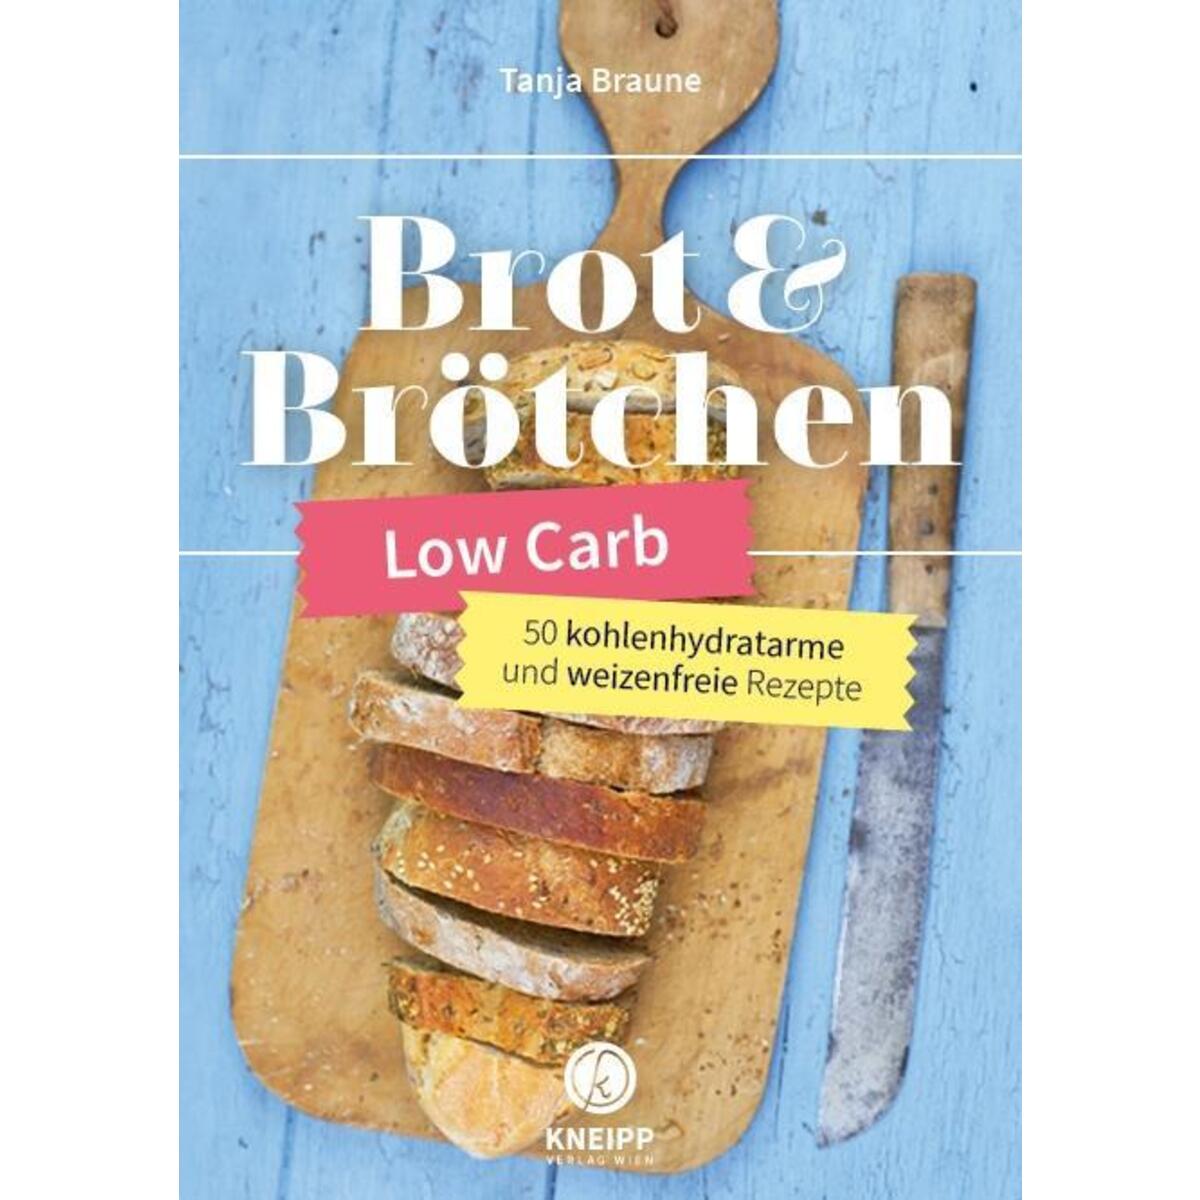 Low Carb Brot & Brötchen von Kneipp Verlag